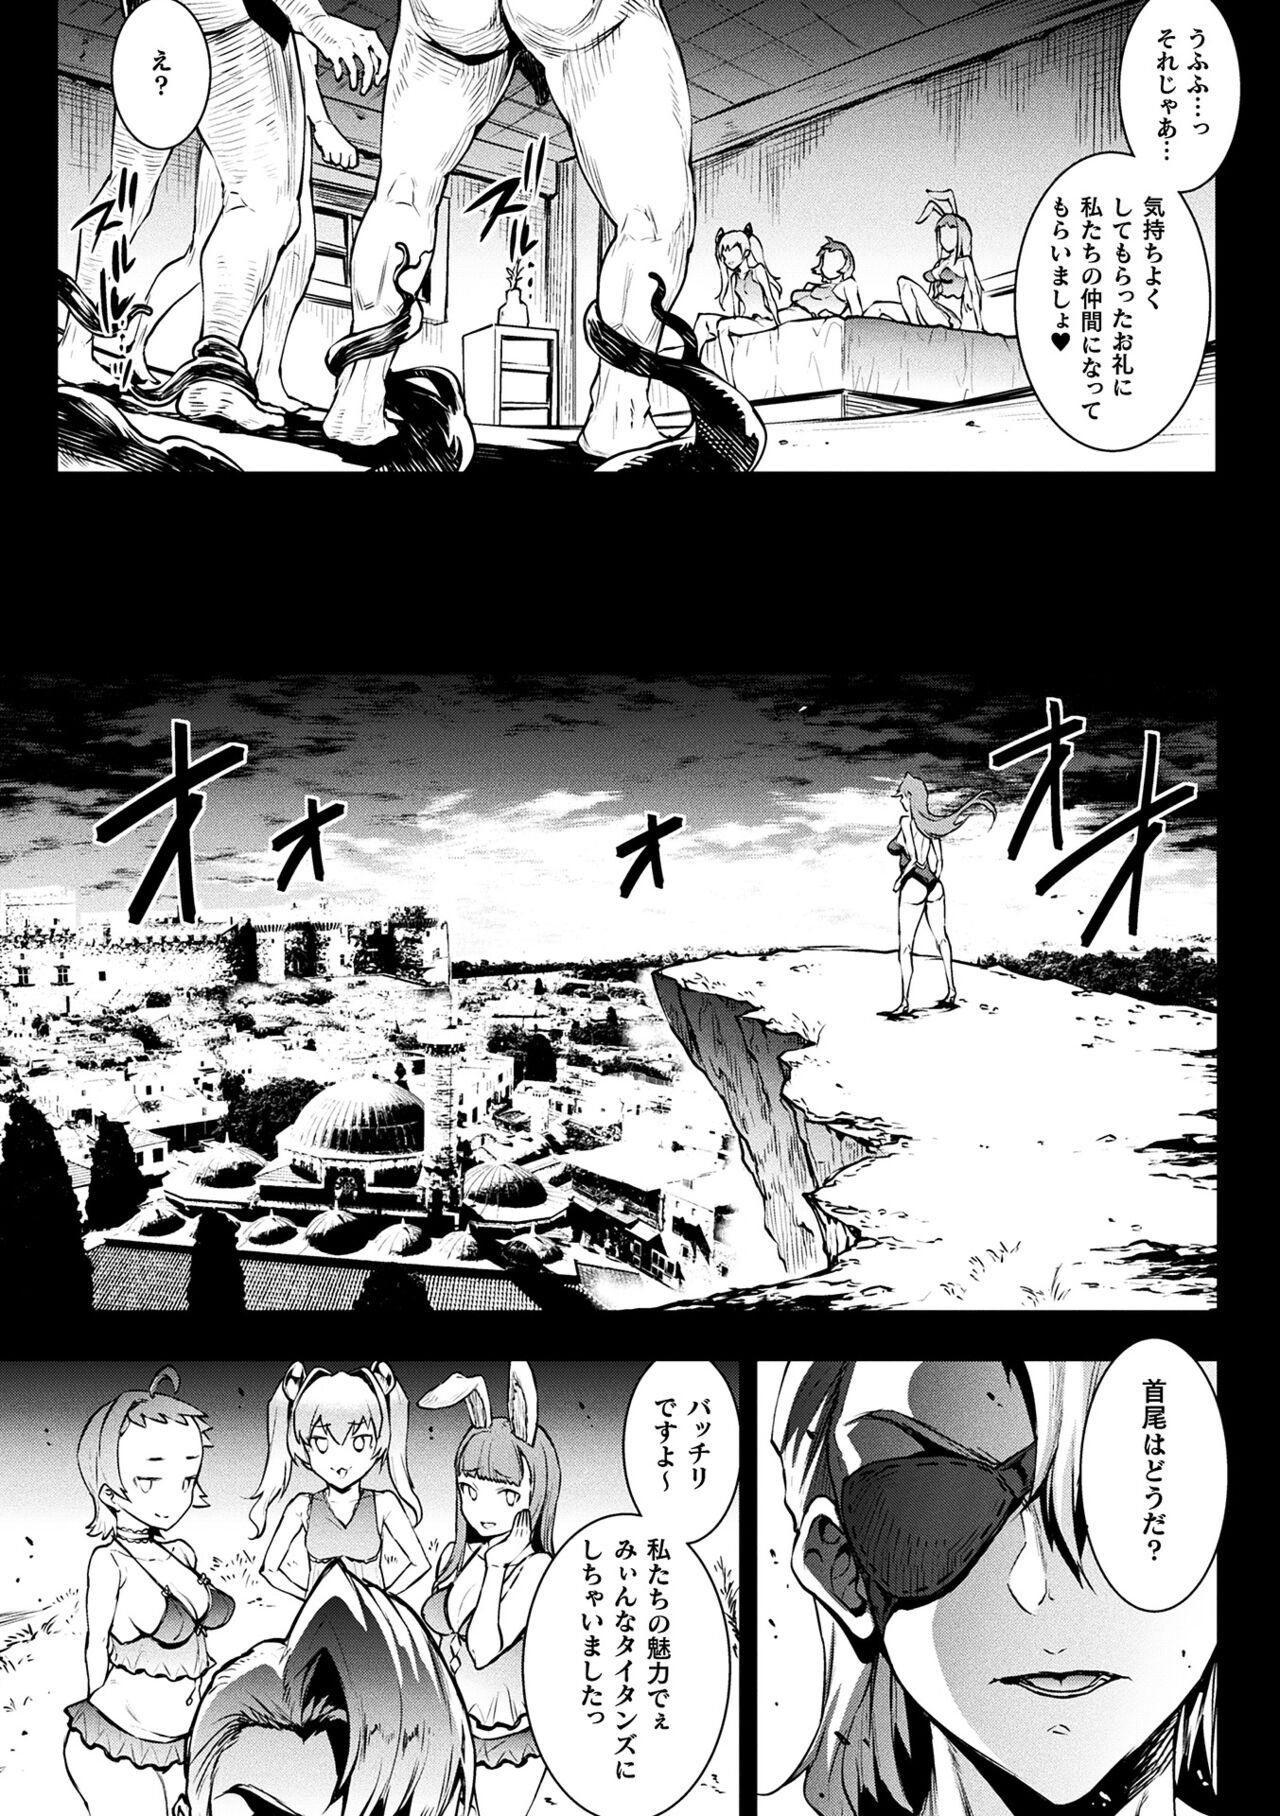 [Erect Sawaru] Raikou Shinki Igis Magia III -PANDRA saga 3rd ignition- 4 [Digital] 16